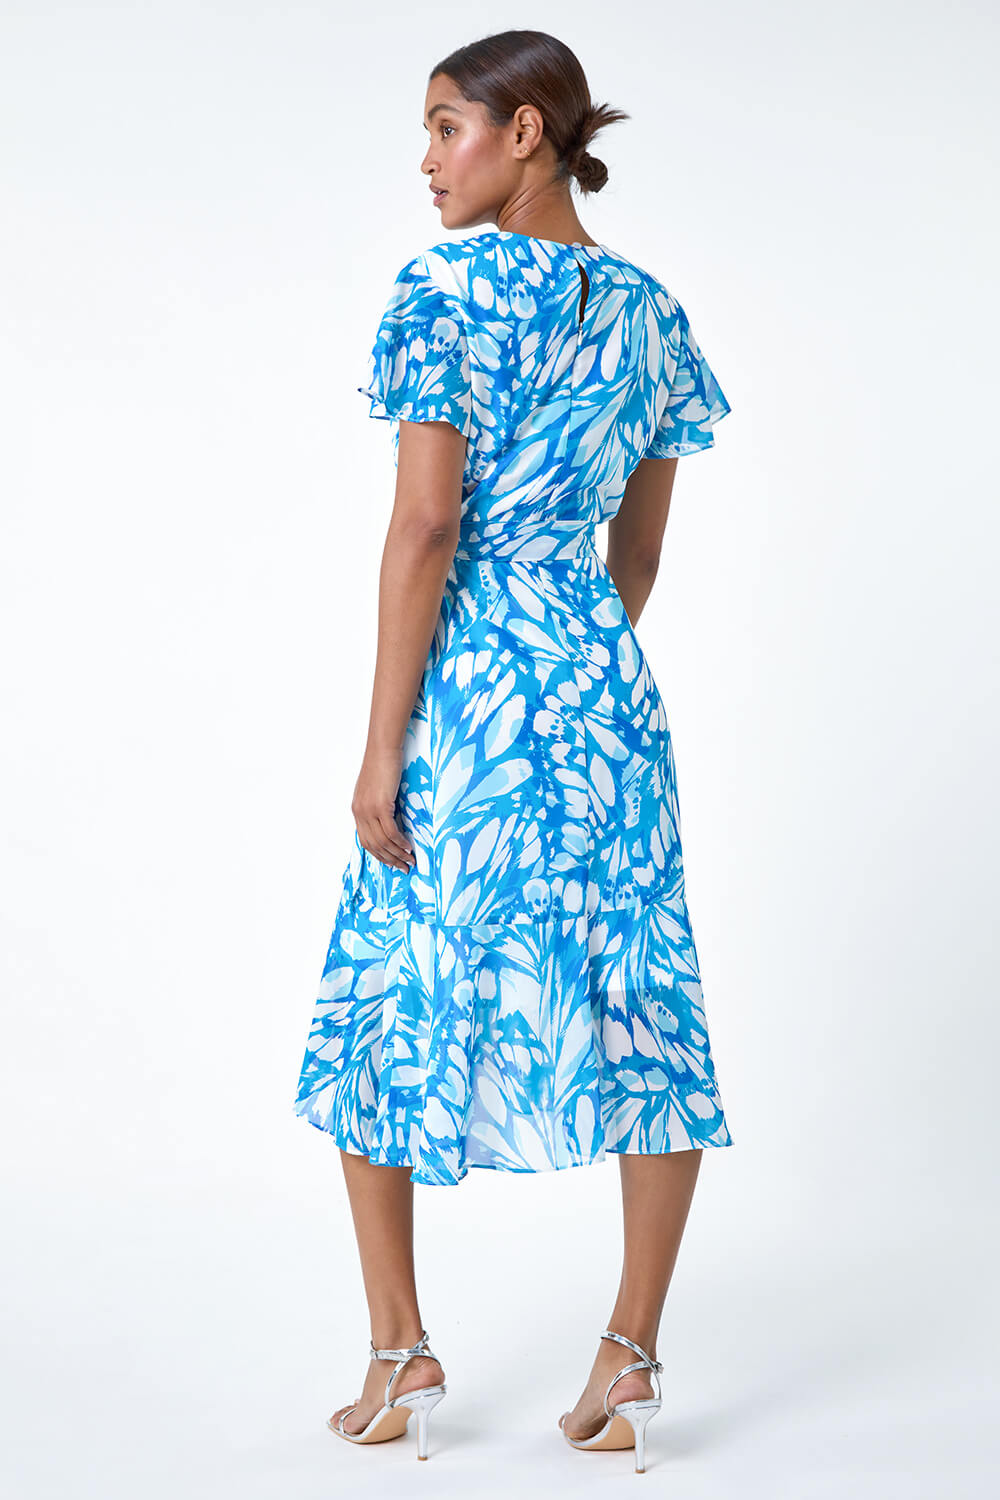 Blue Butterfly Print Chiffon Wrap Dress, Image 3 of 5